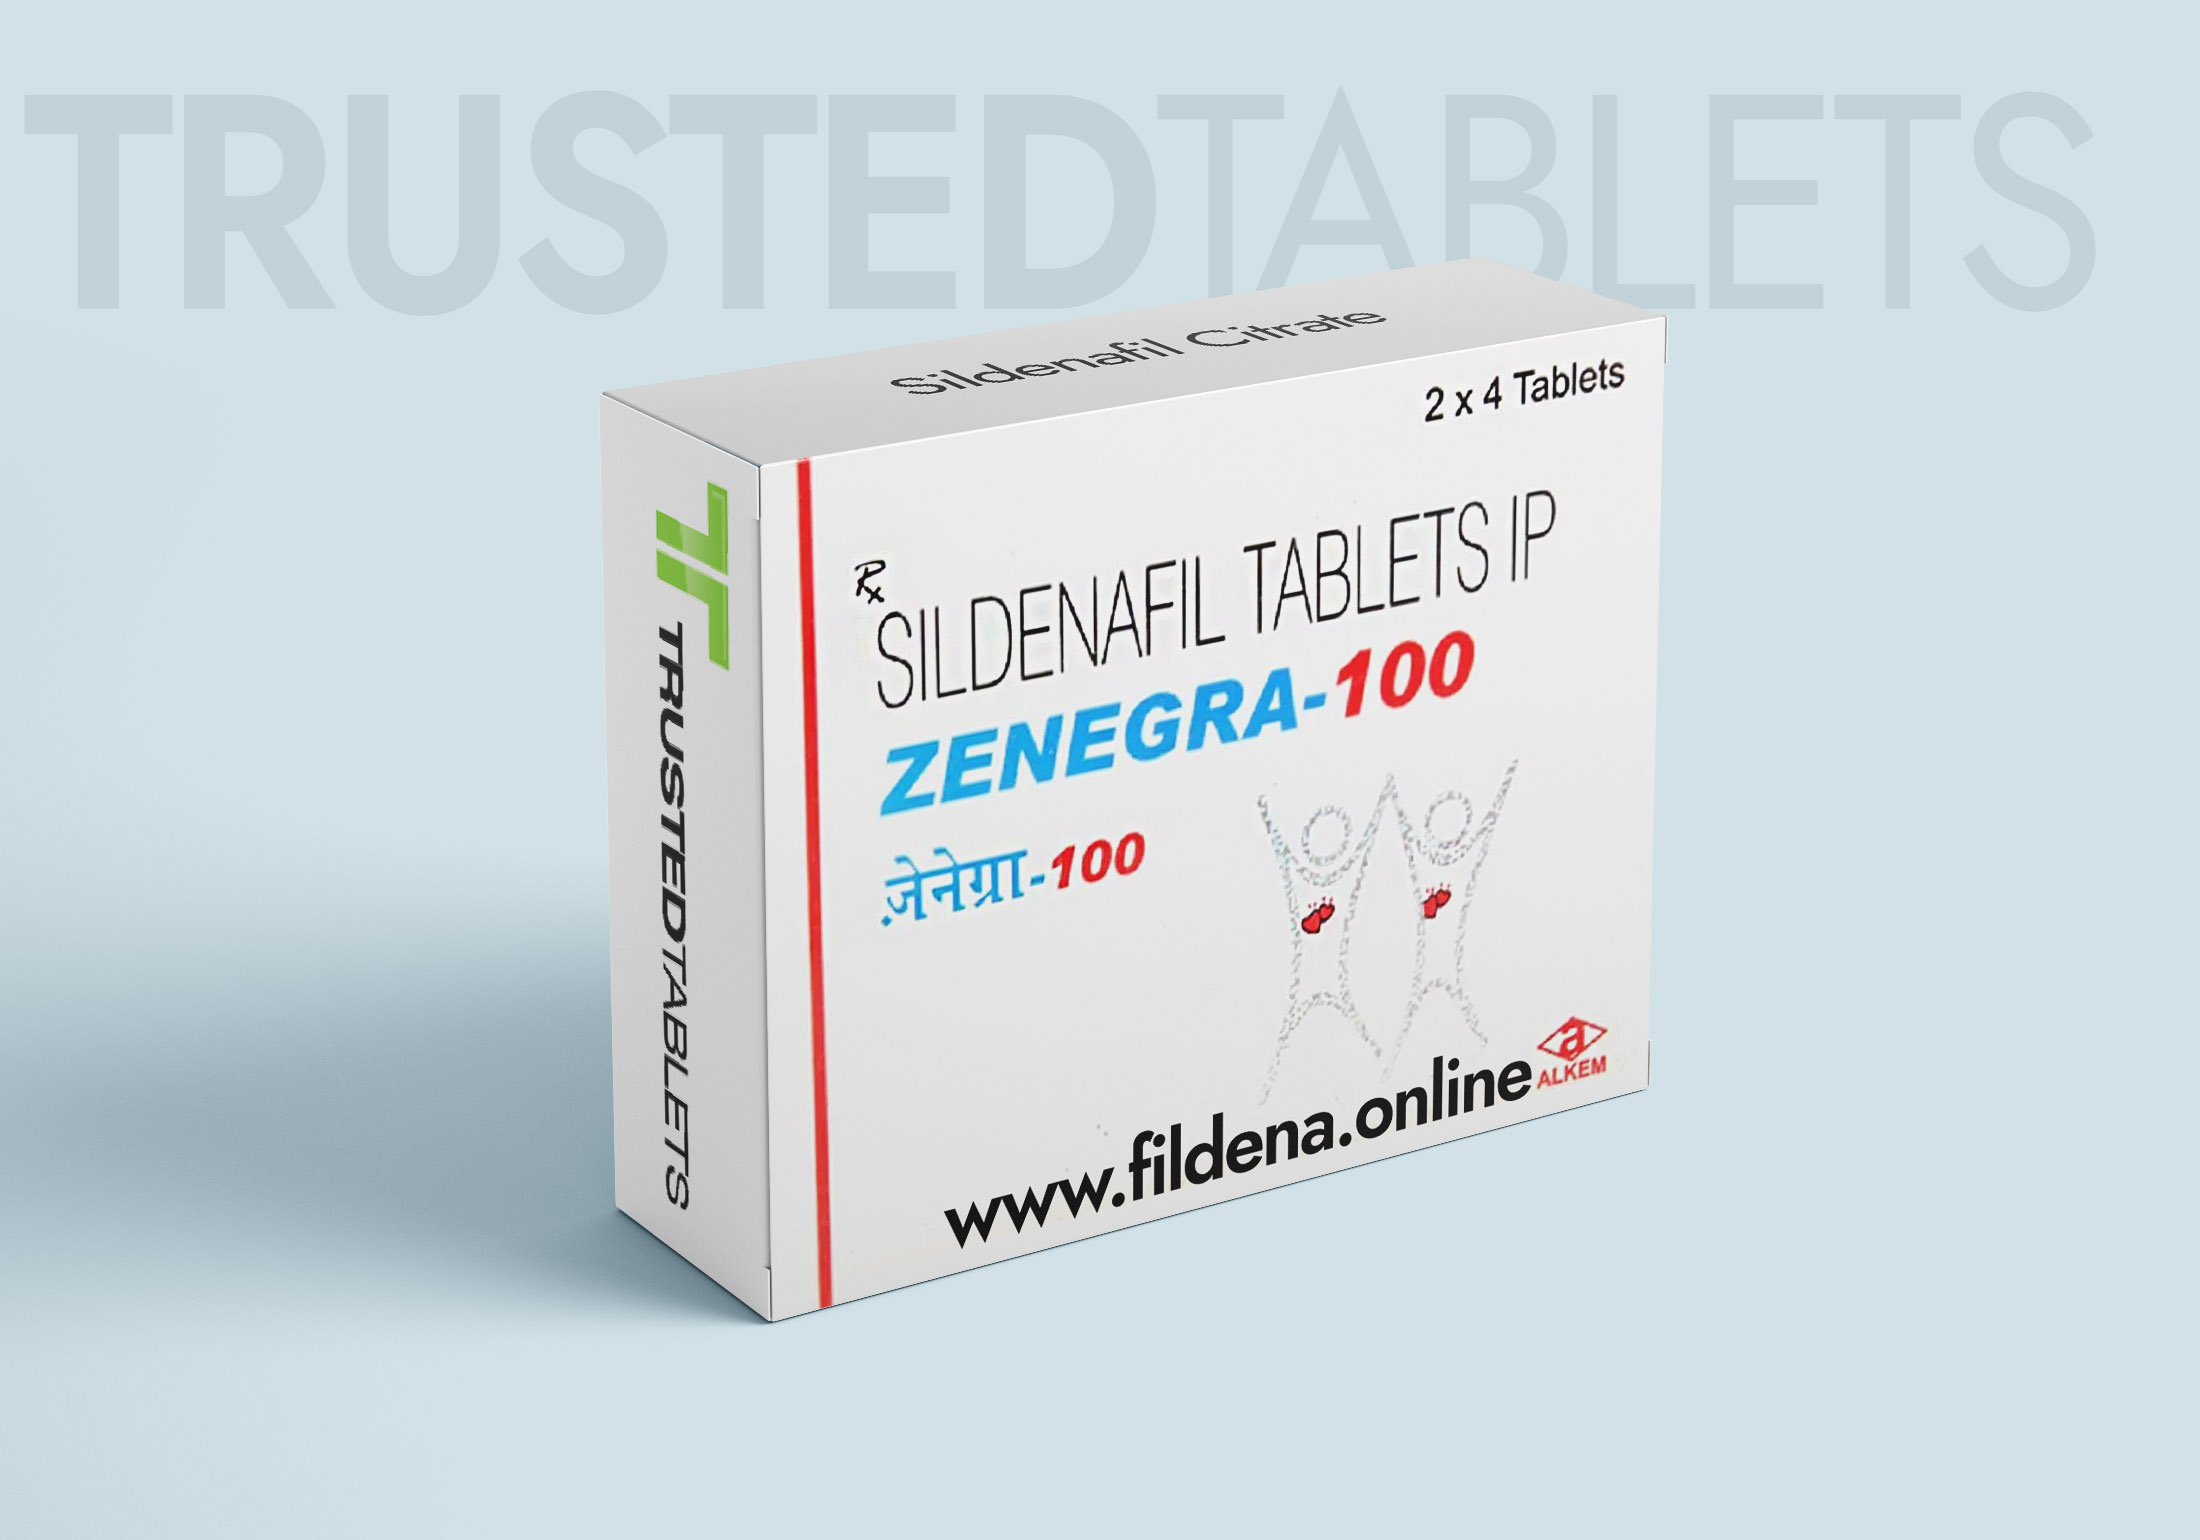 Zenegra TrustedTablets